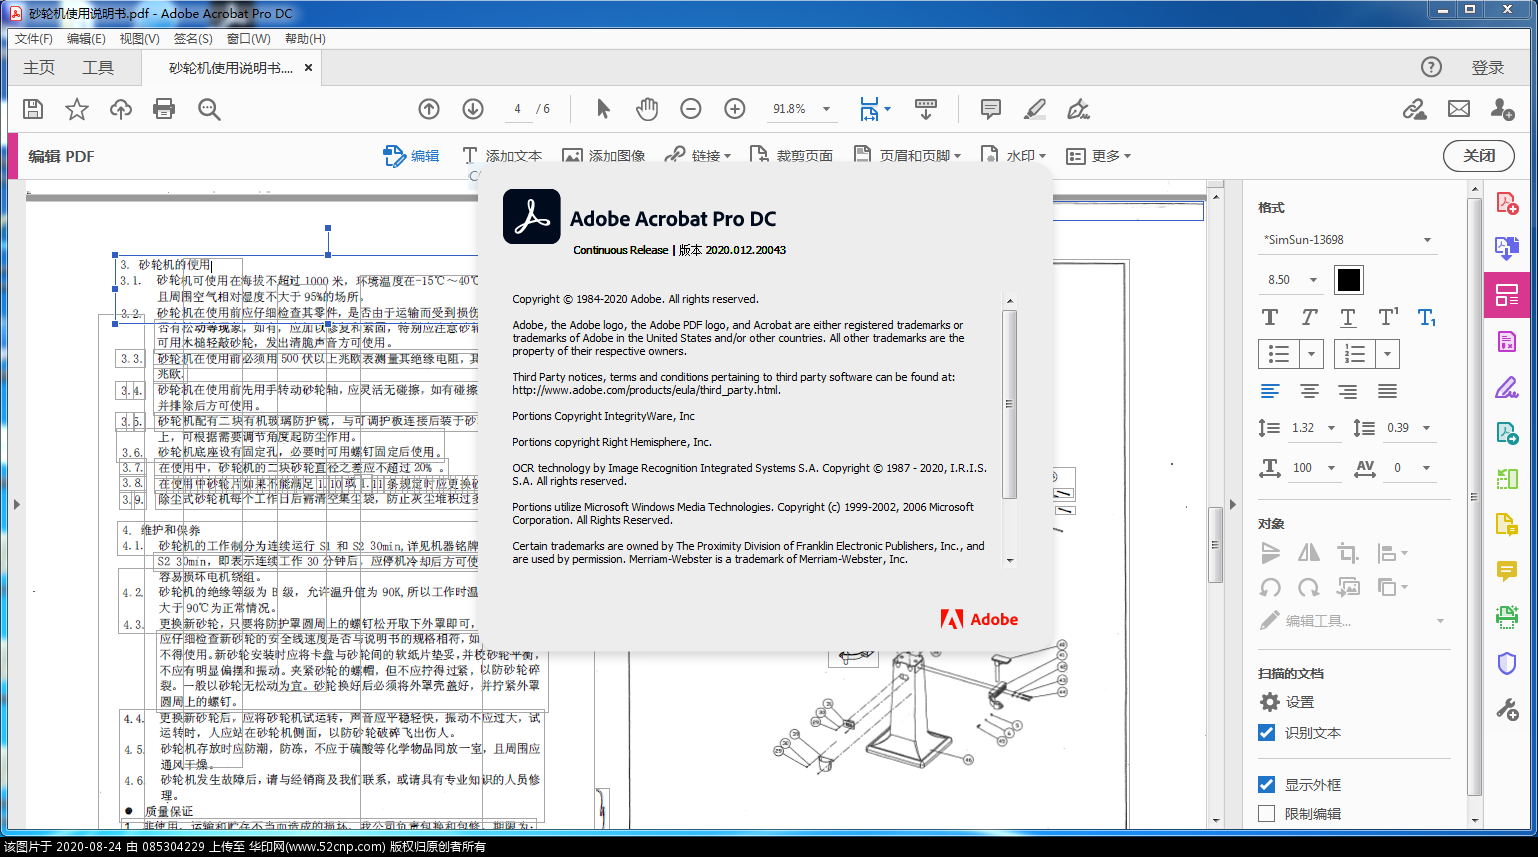 Adobe Acrobat Pro DC v2020.012.20043直装版{tag}(1)